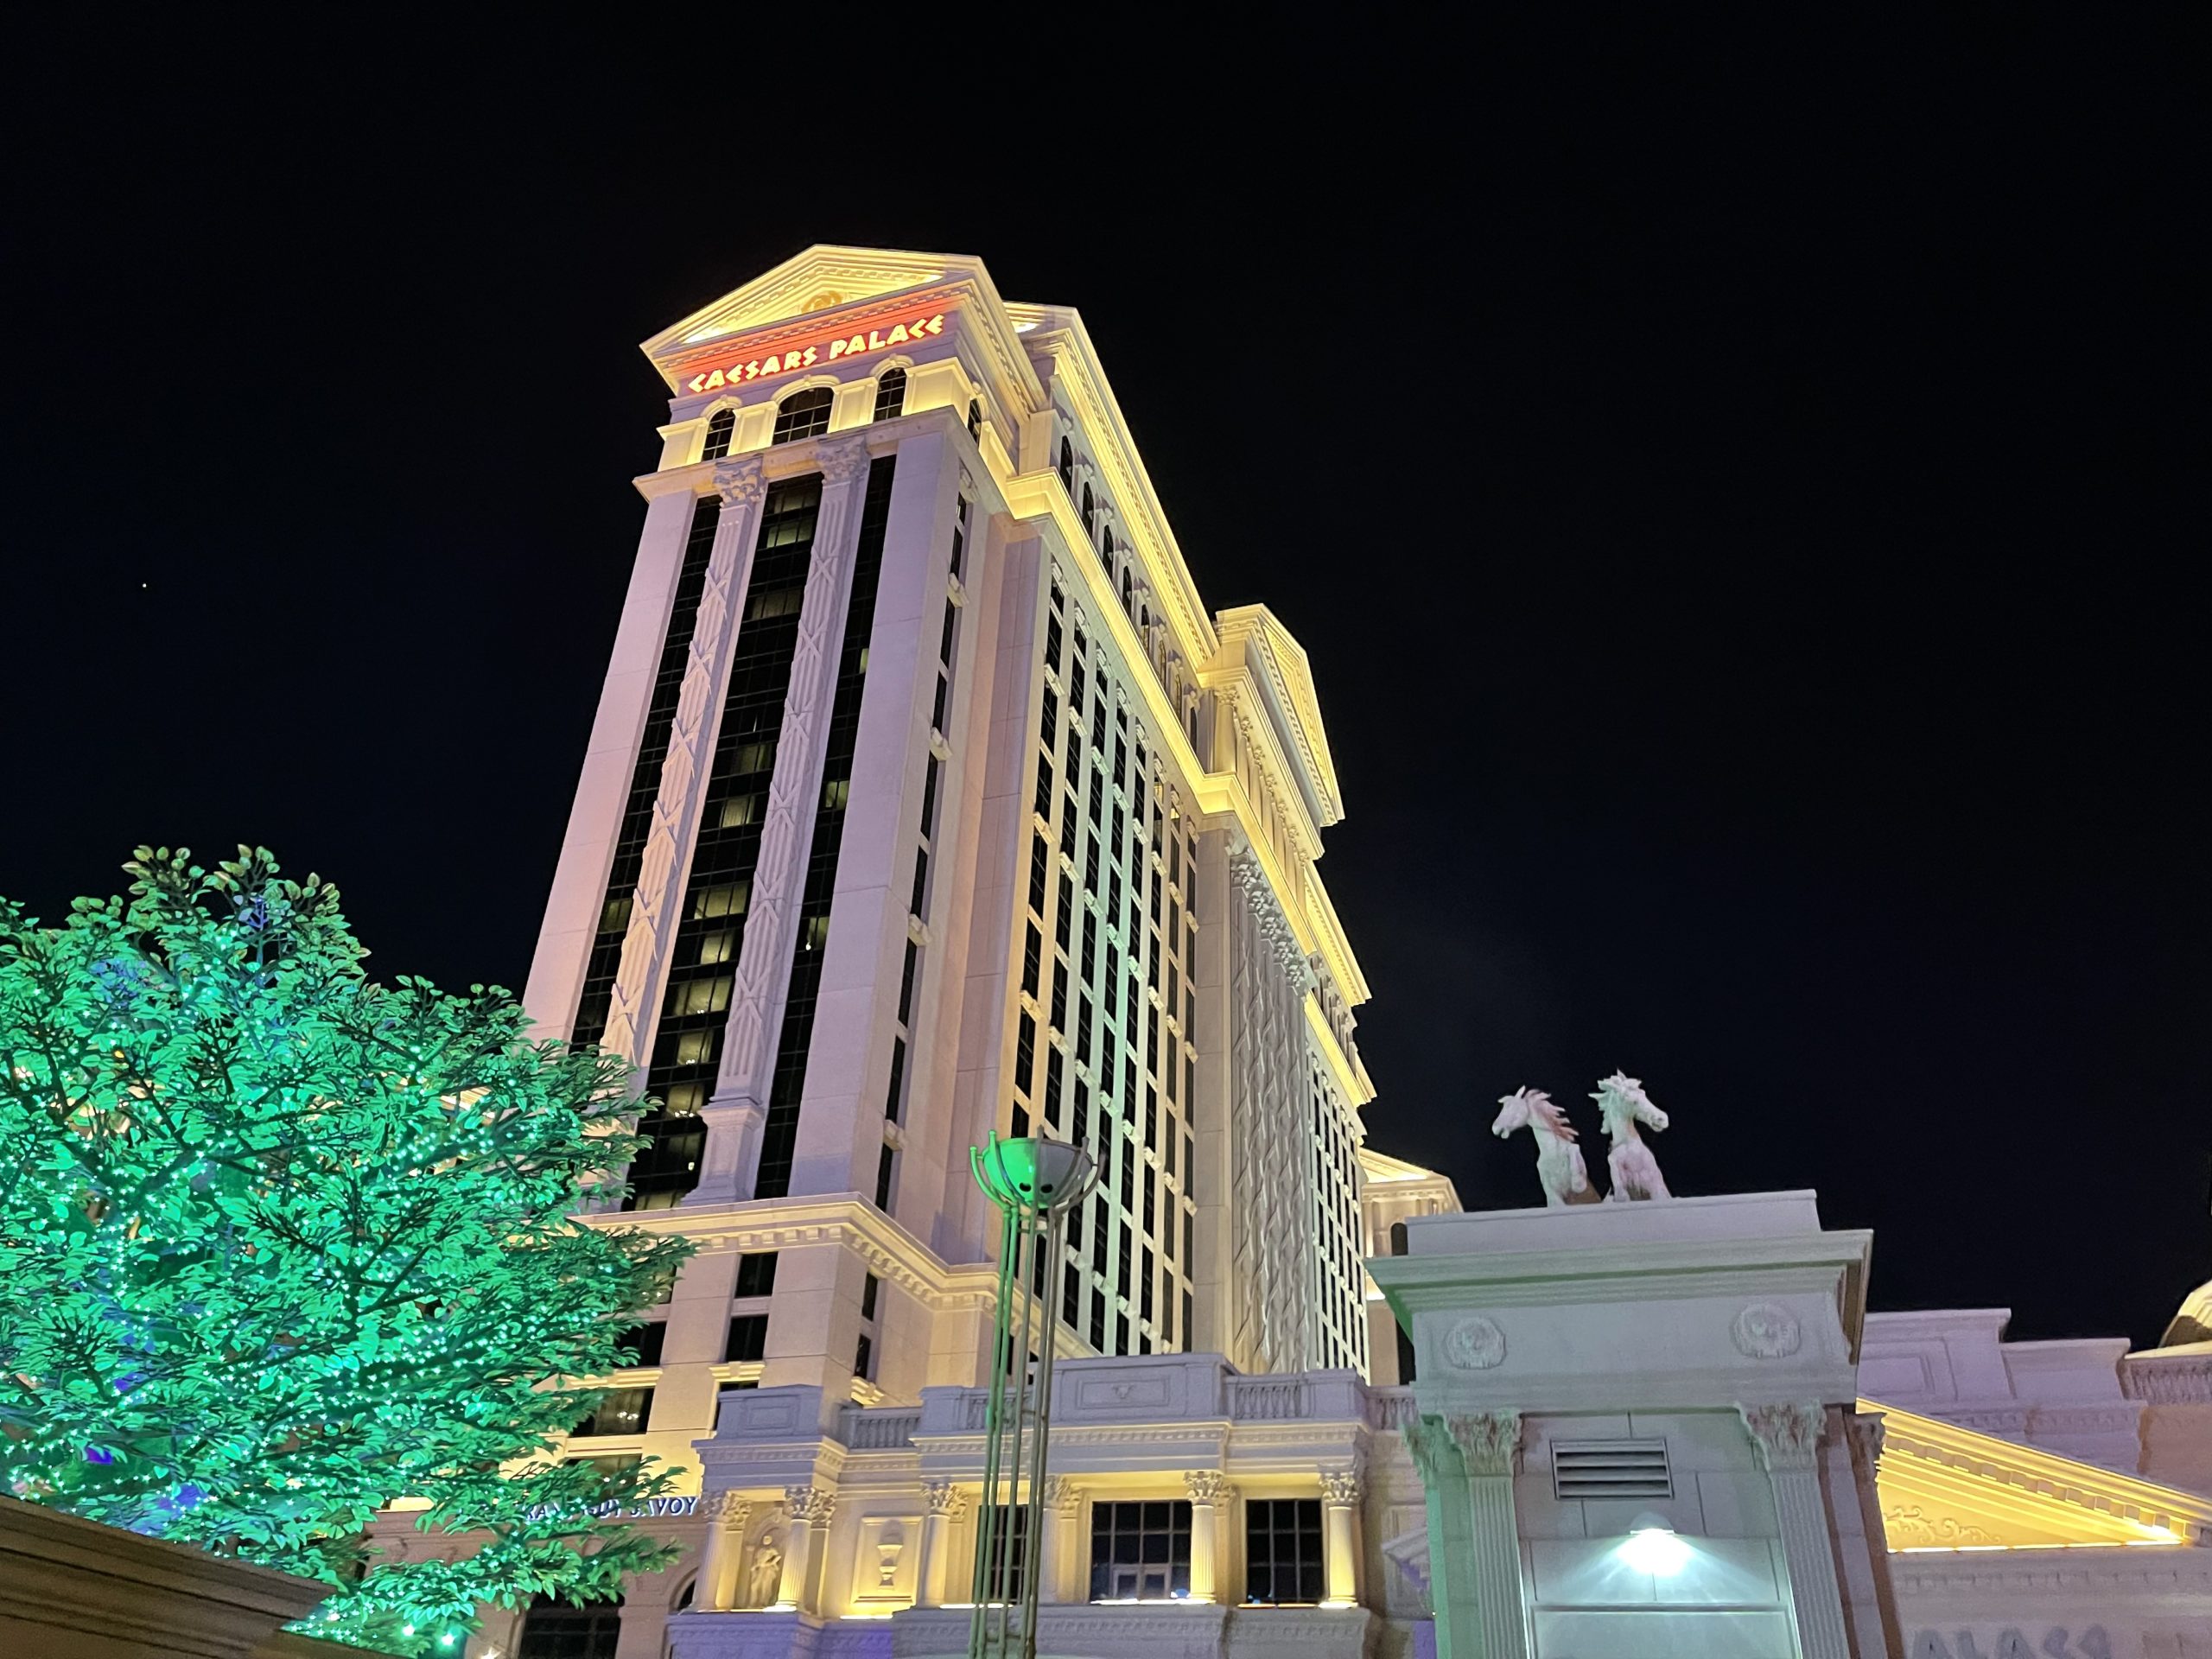 Review: Caesars Palace Las Vegas Augustus Tower Fountain View